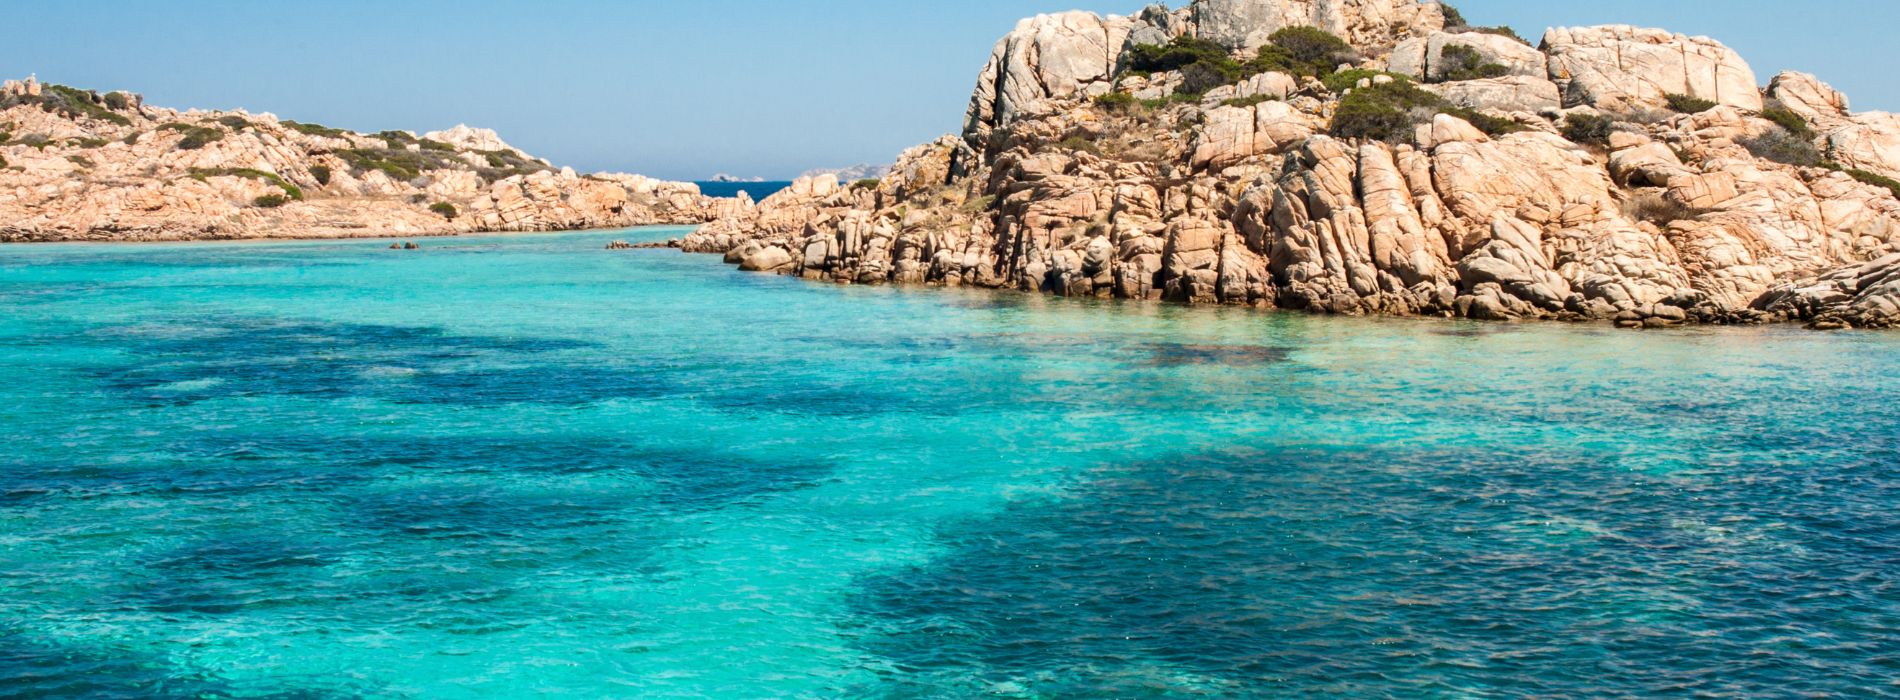 Sardinia-beach